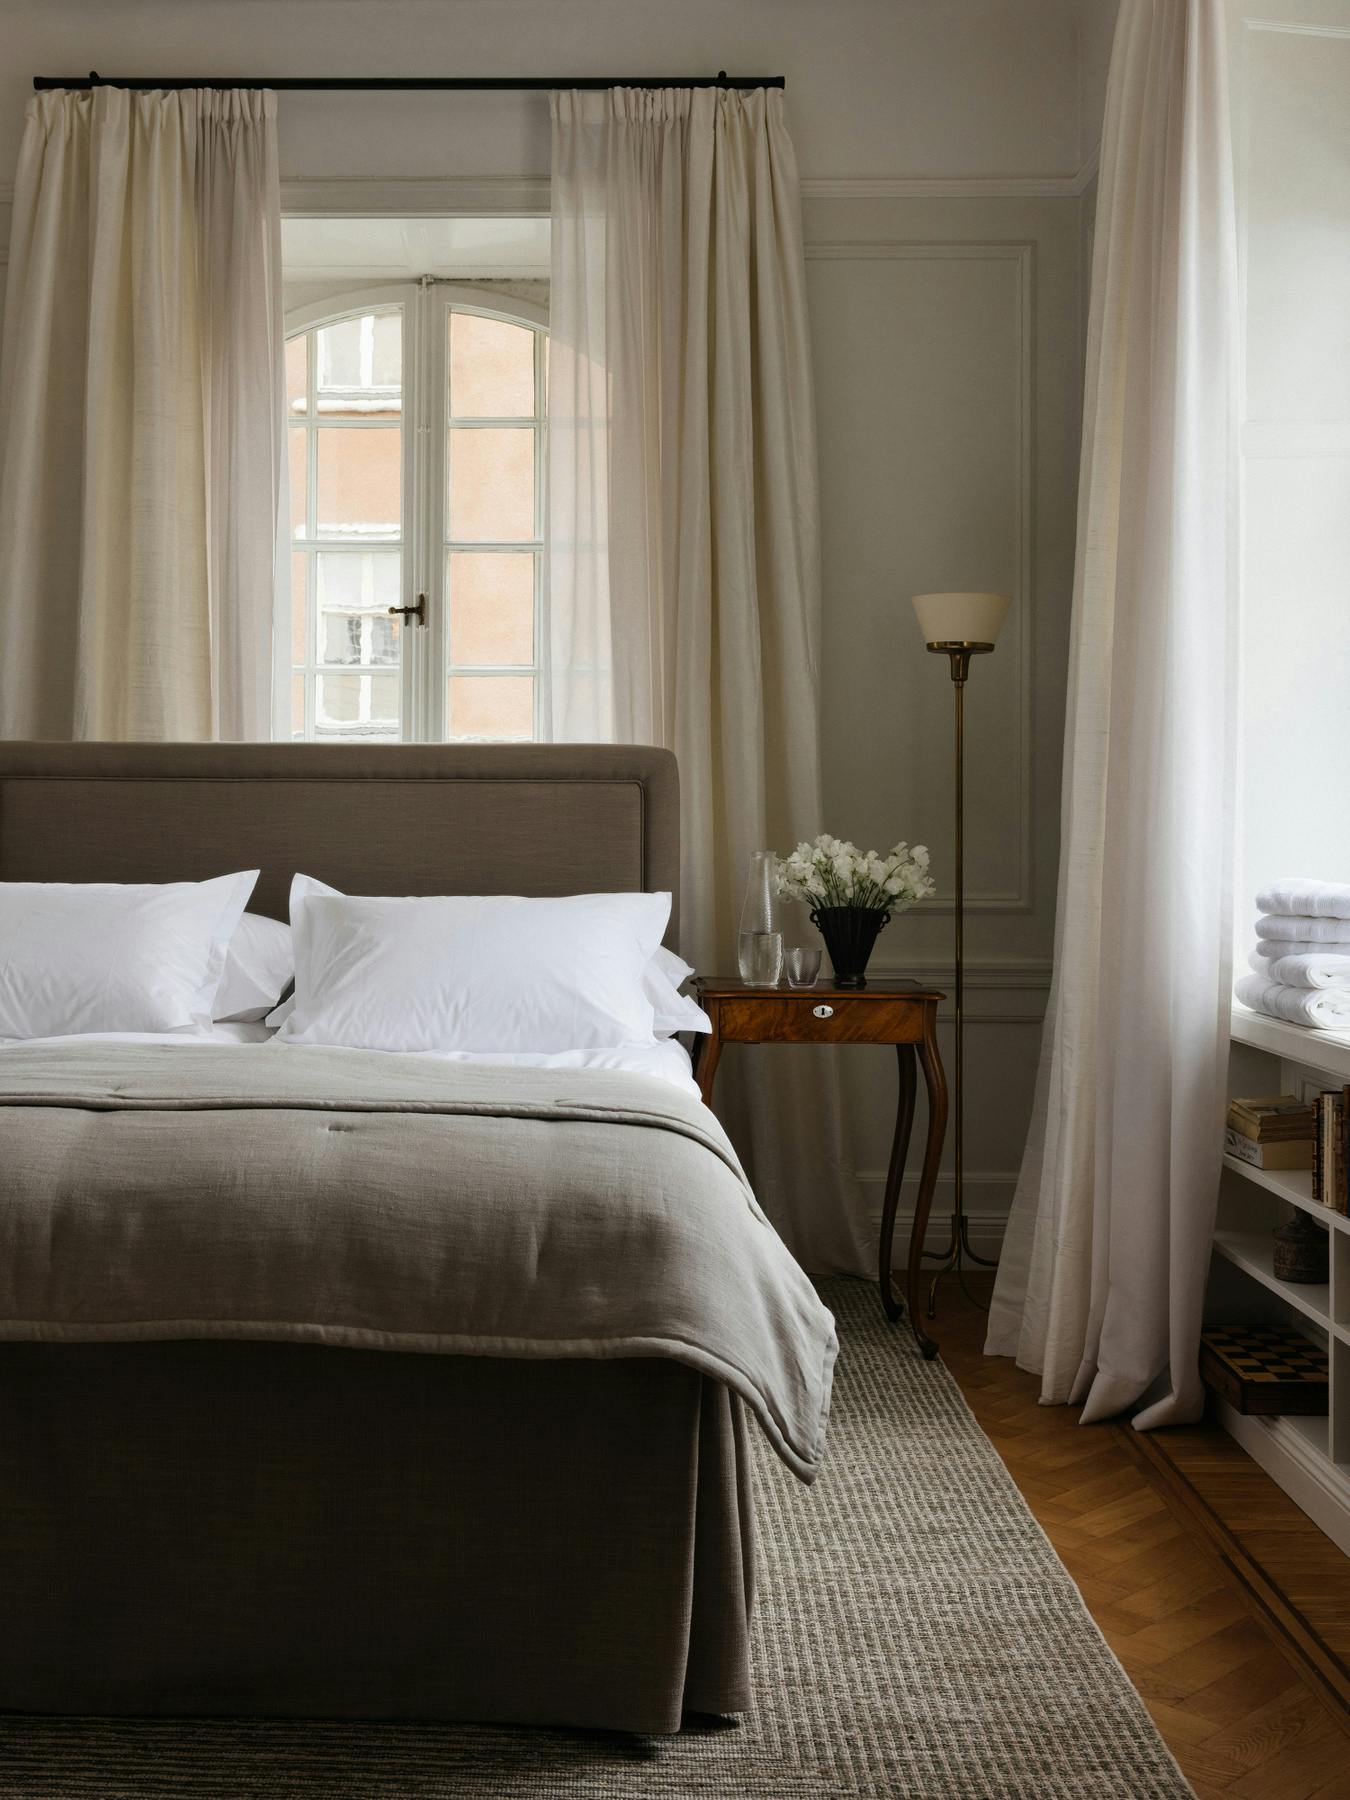 Siena Hotel Bedspread